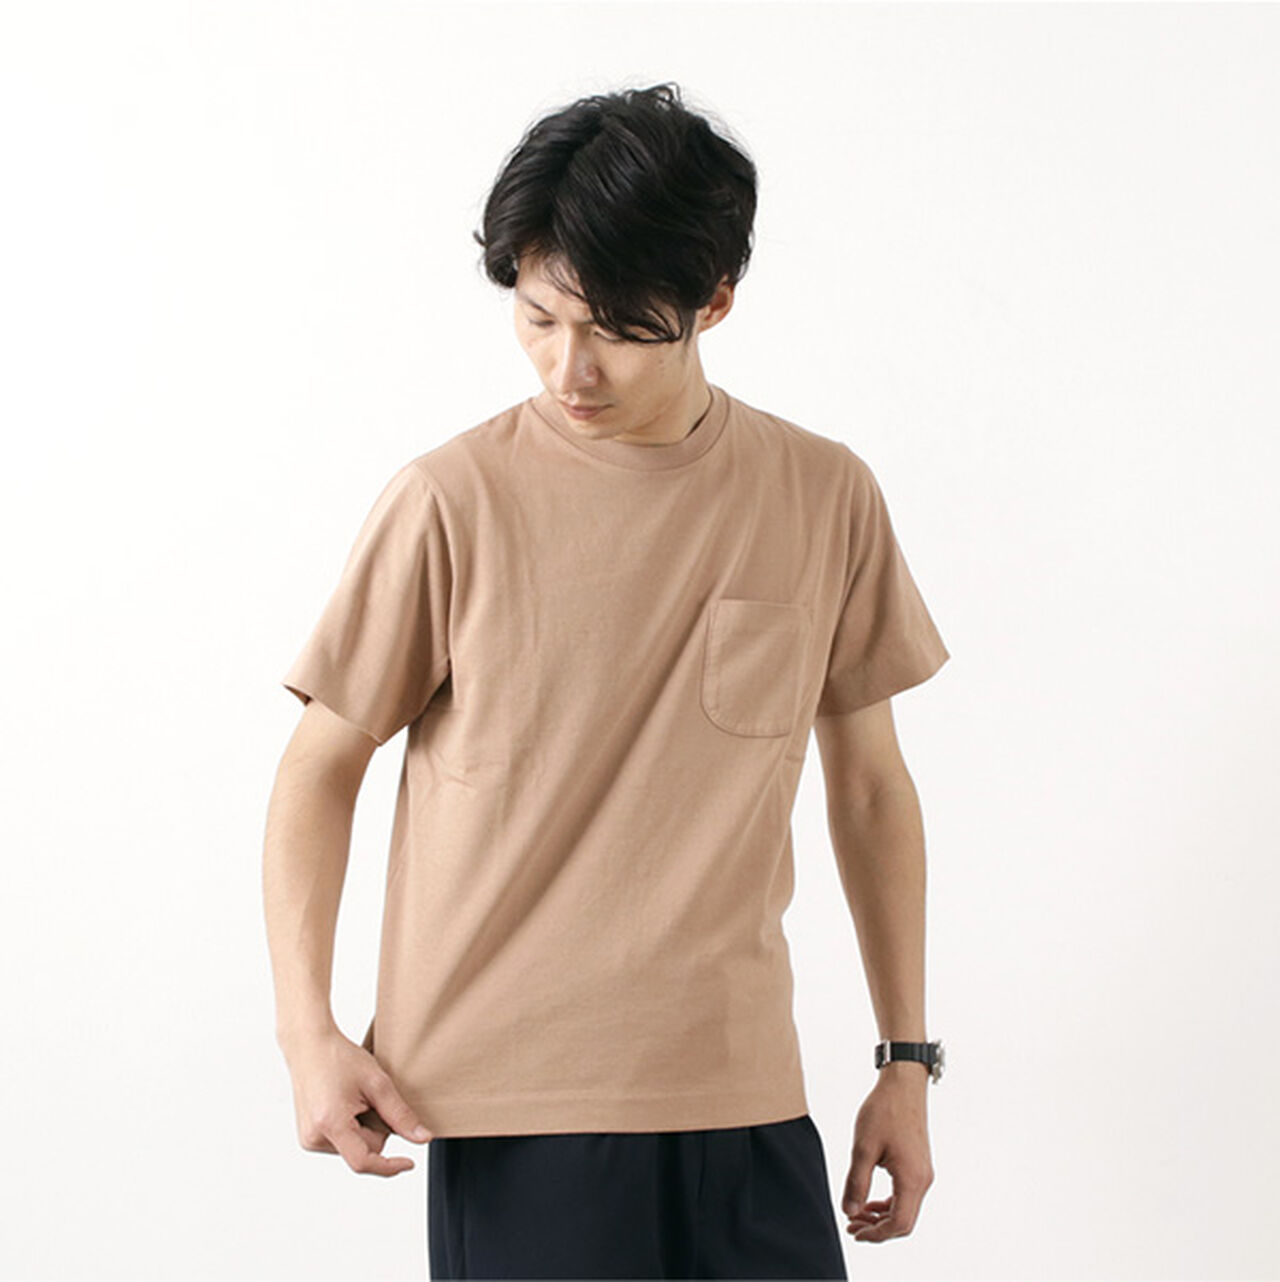 Extra Soft Standard Pocket T-Shirt,Beige, large image number 0